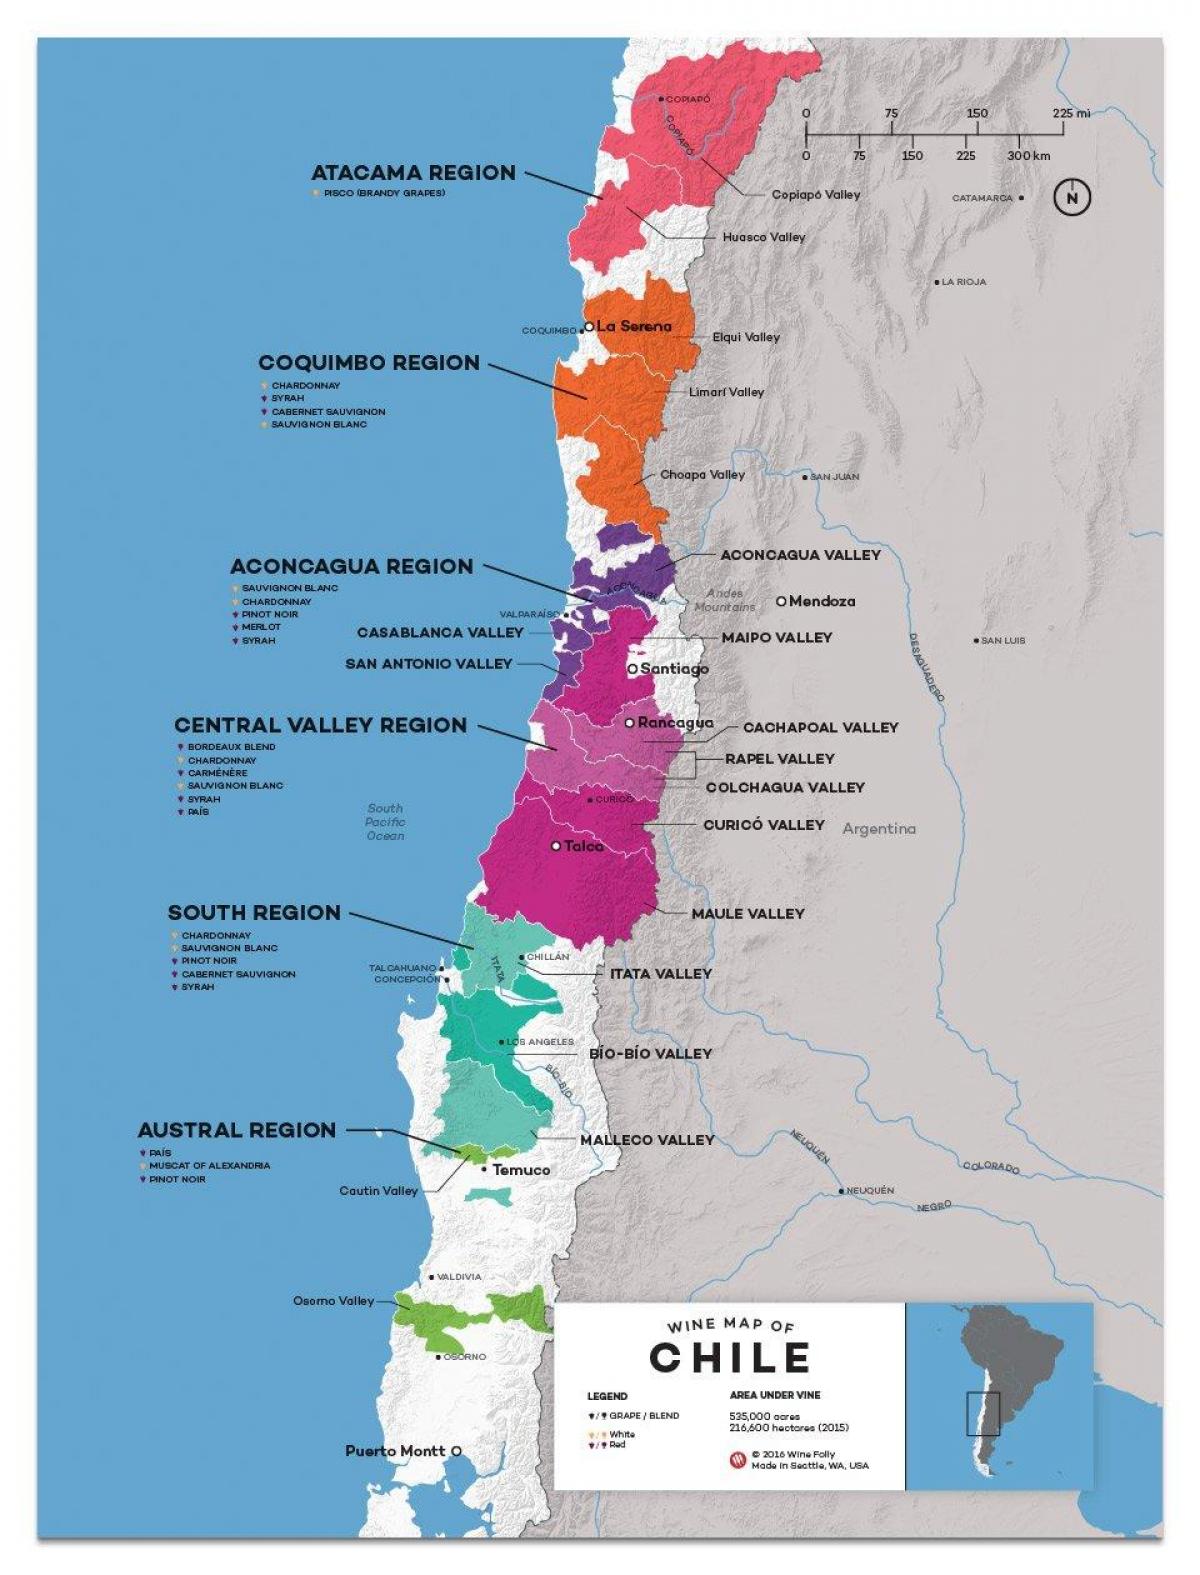 Chile karta Win kraju